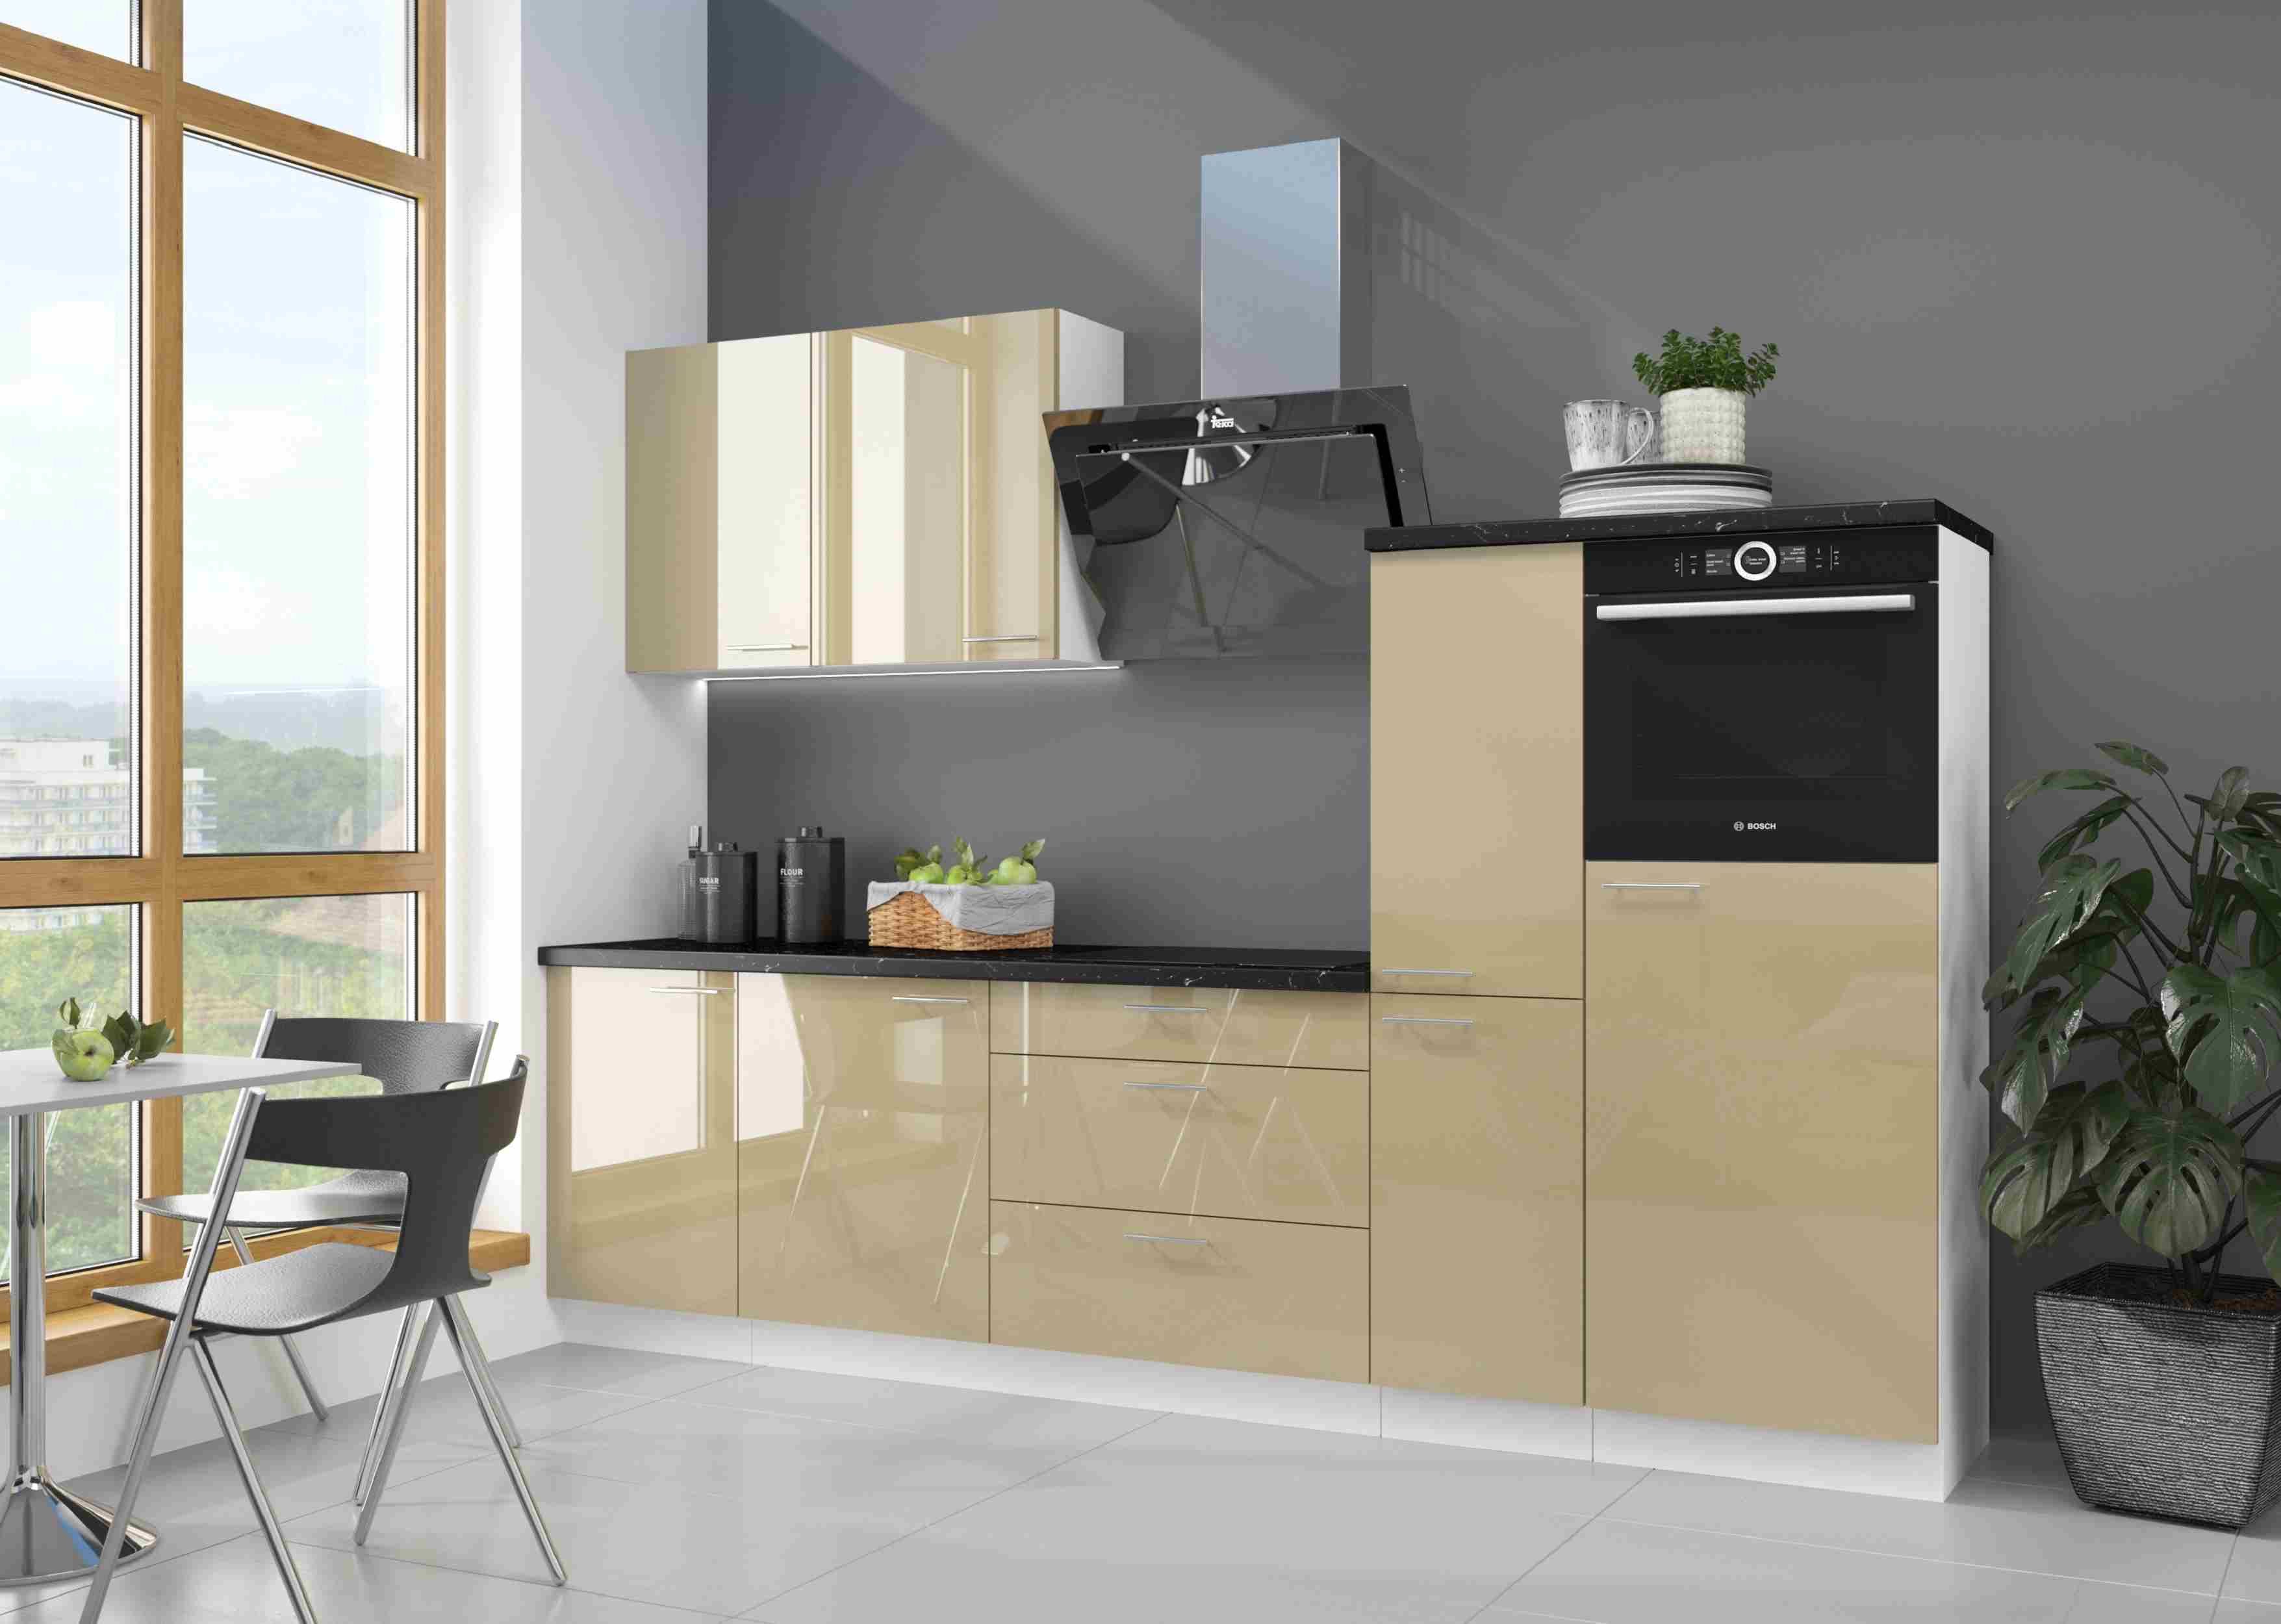 Furnix Küche Vivonne Einbauküche 270 cm Küchenzeile Hochglanz ohne E-Geräte, Maße 270x162x60 cm, ästhetisch & pflegeleicht